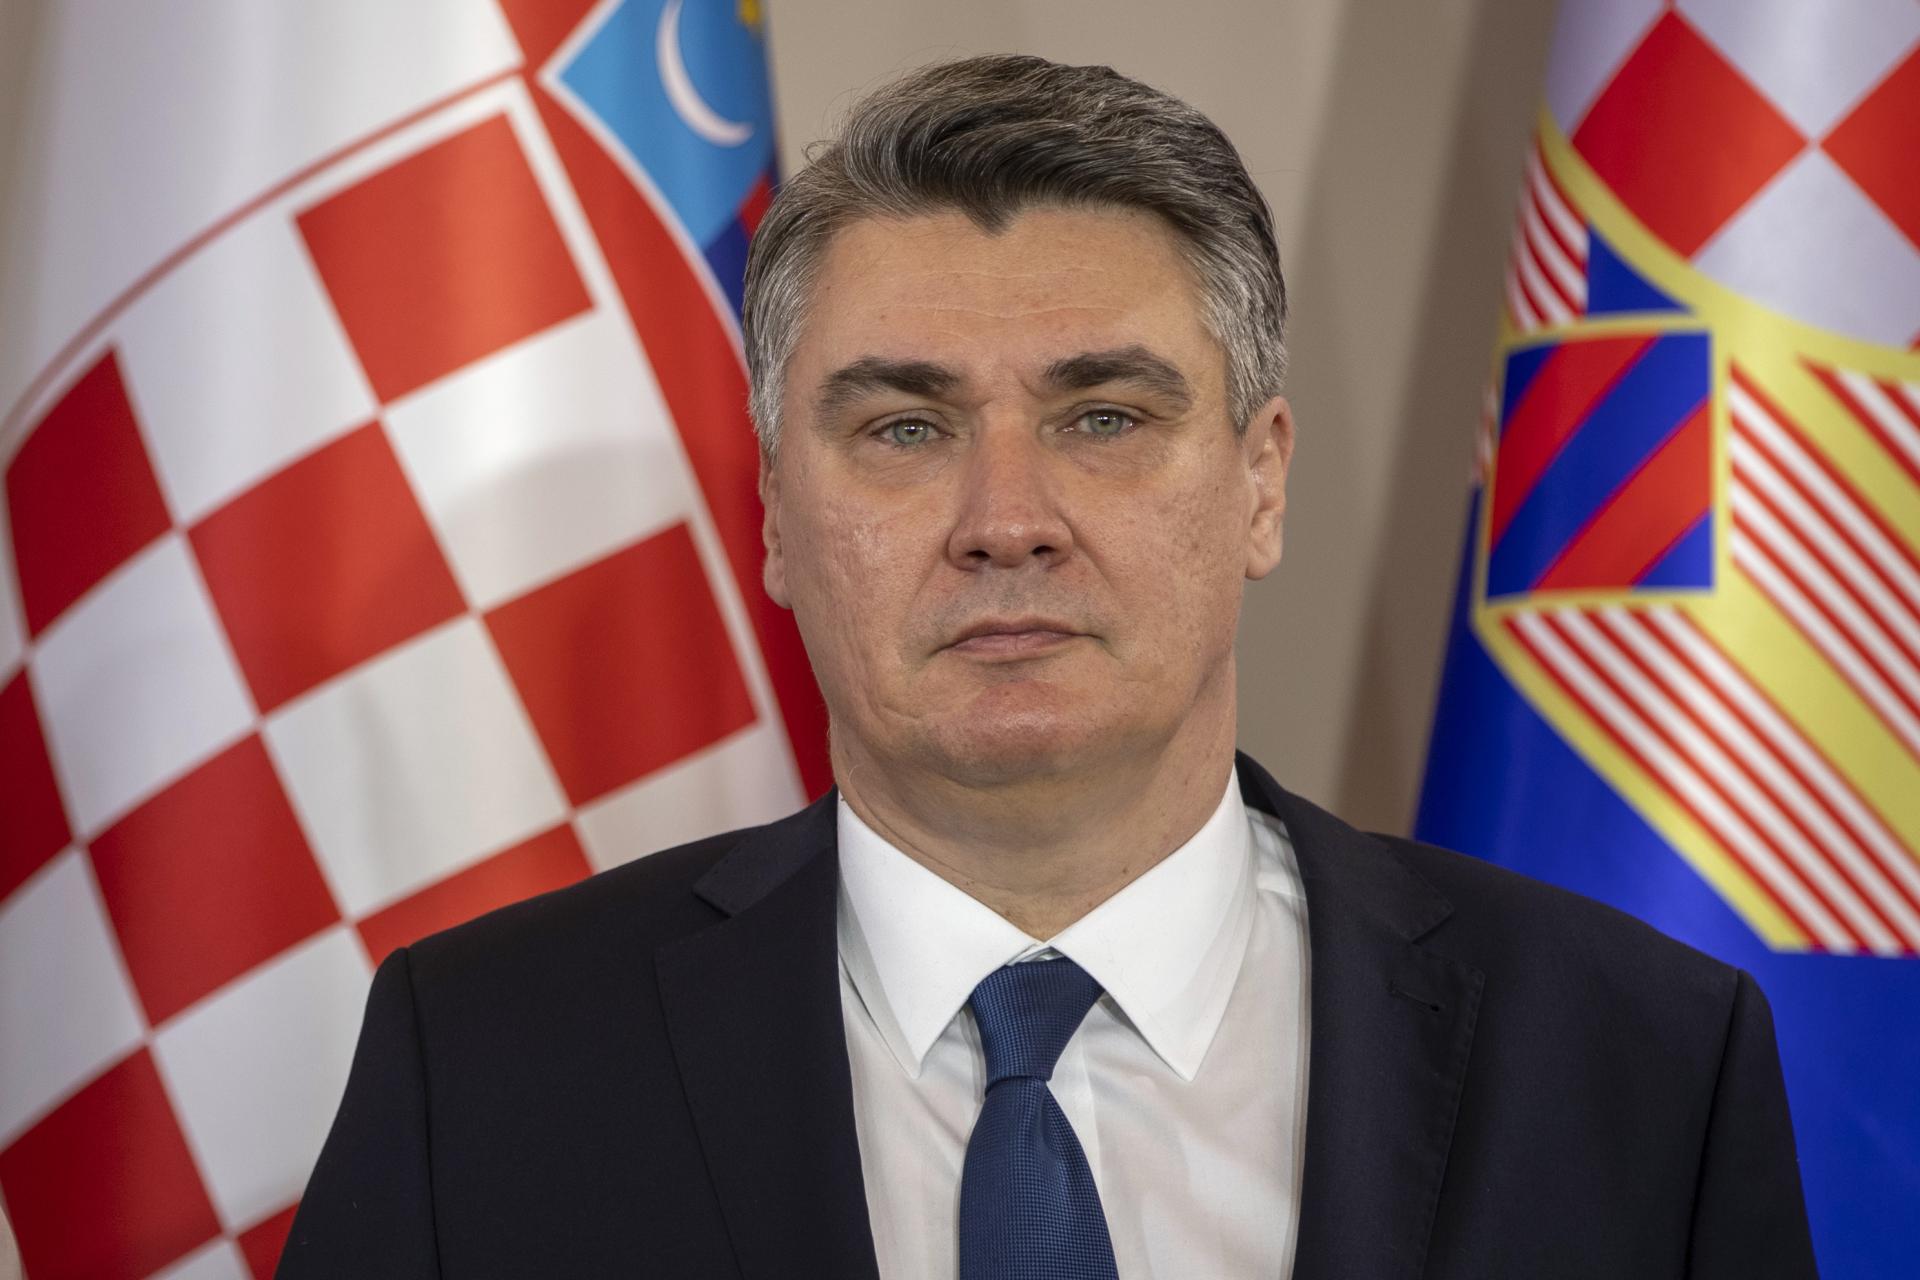 Krym už nikdy nebude súčasťou Ukrajiny, vyhlásil chorvátsky prezident. Milanović kritizuje pomoc zo Západu